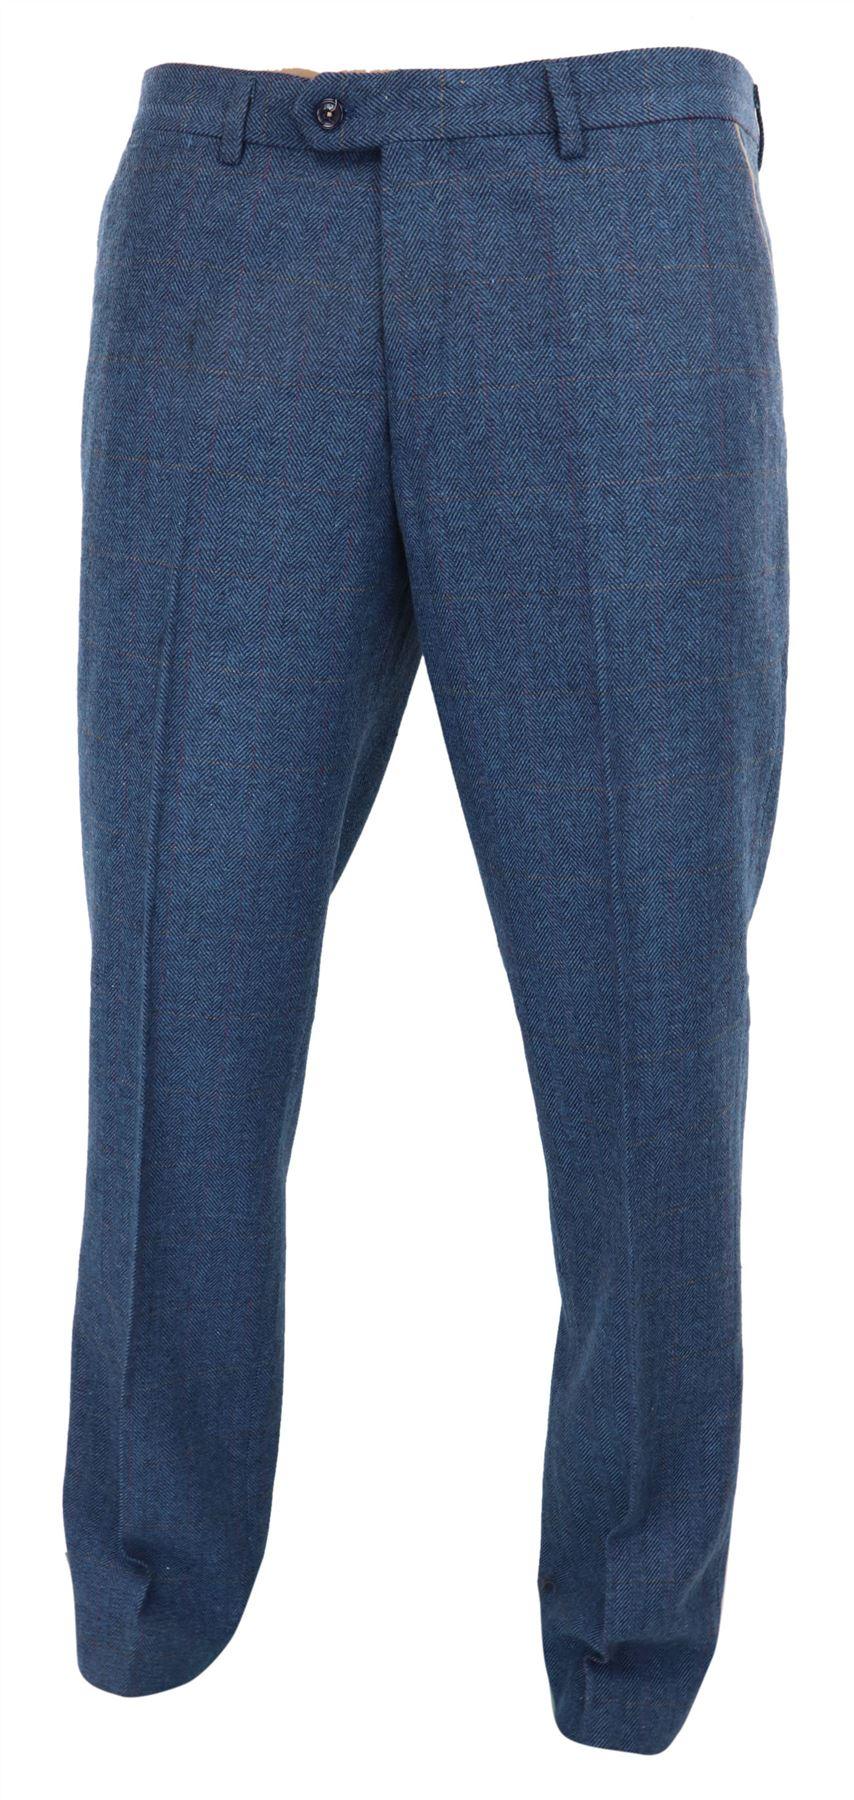 Mens Blue Trousers Herringbone Tweed Check Vintage Tailored Fit Suit ...